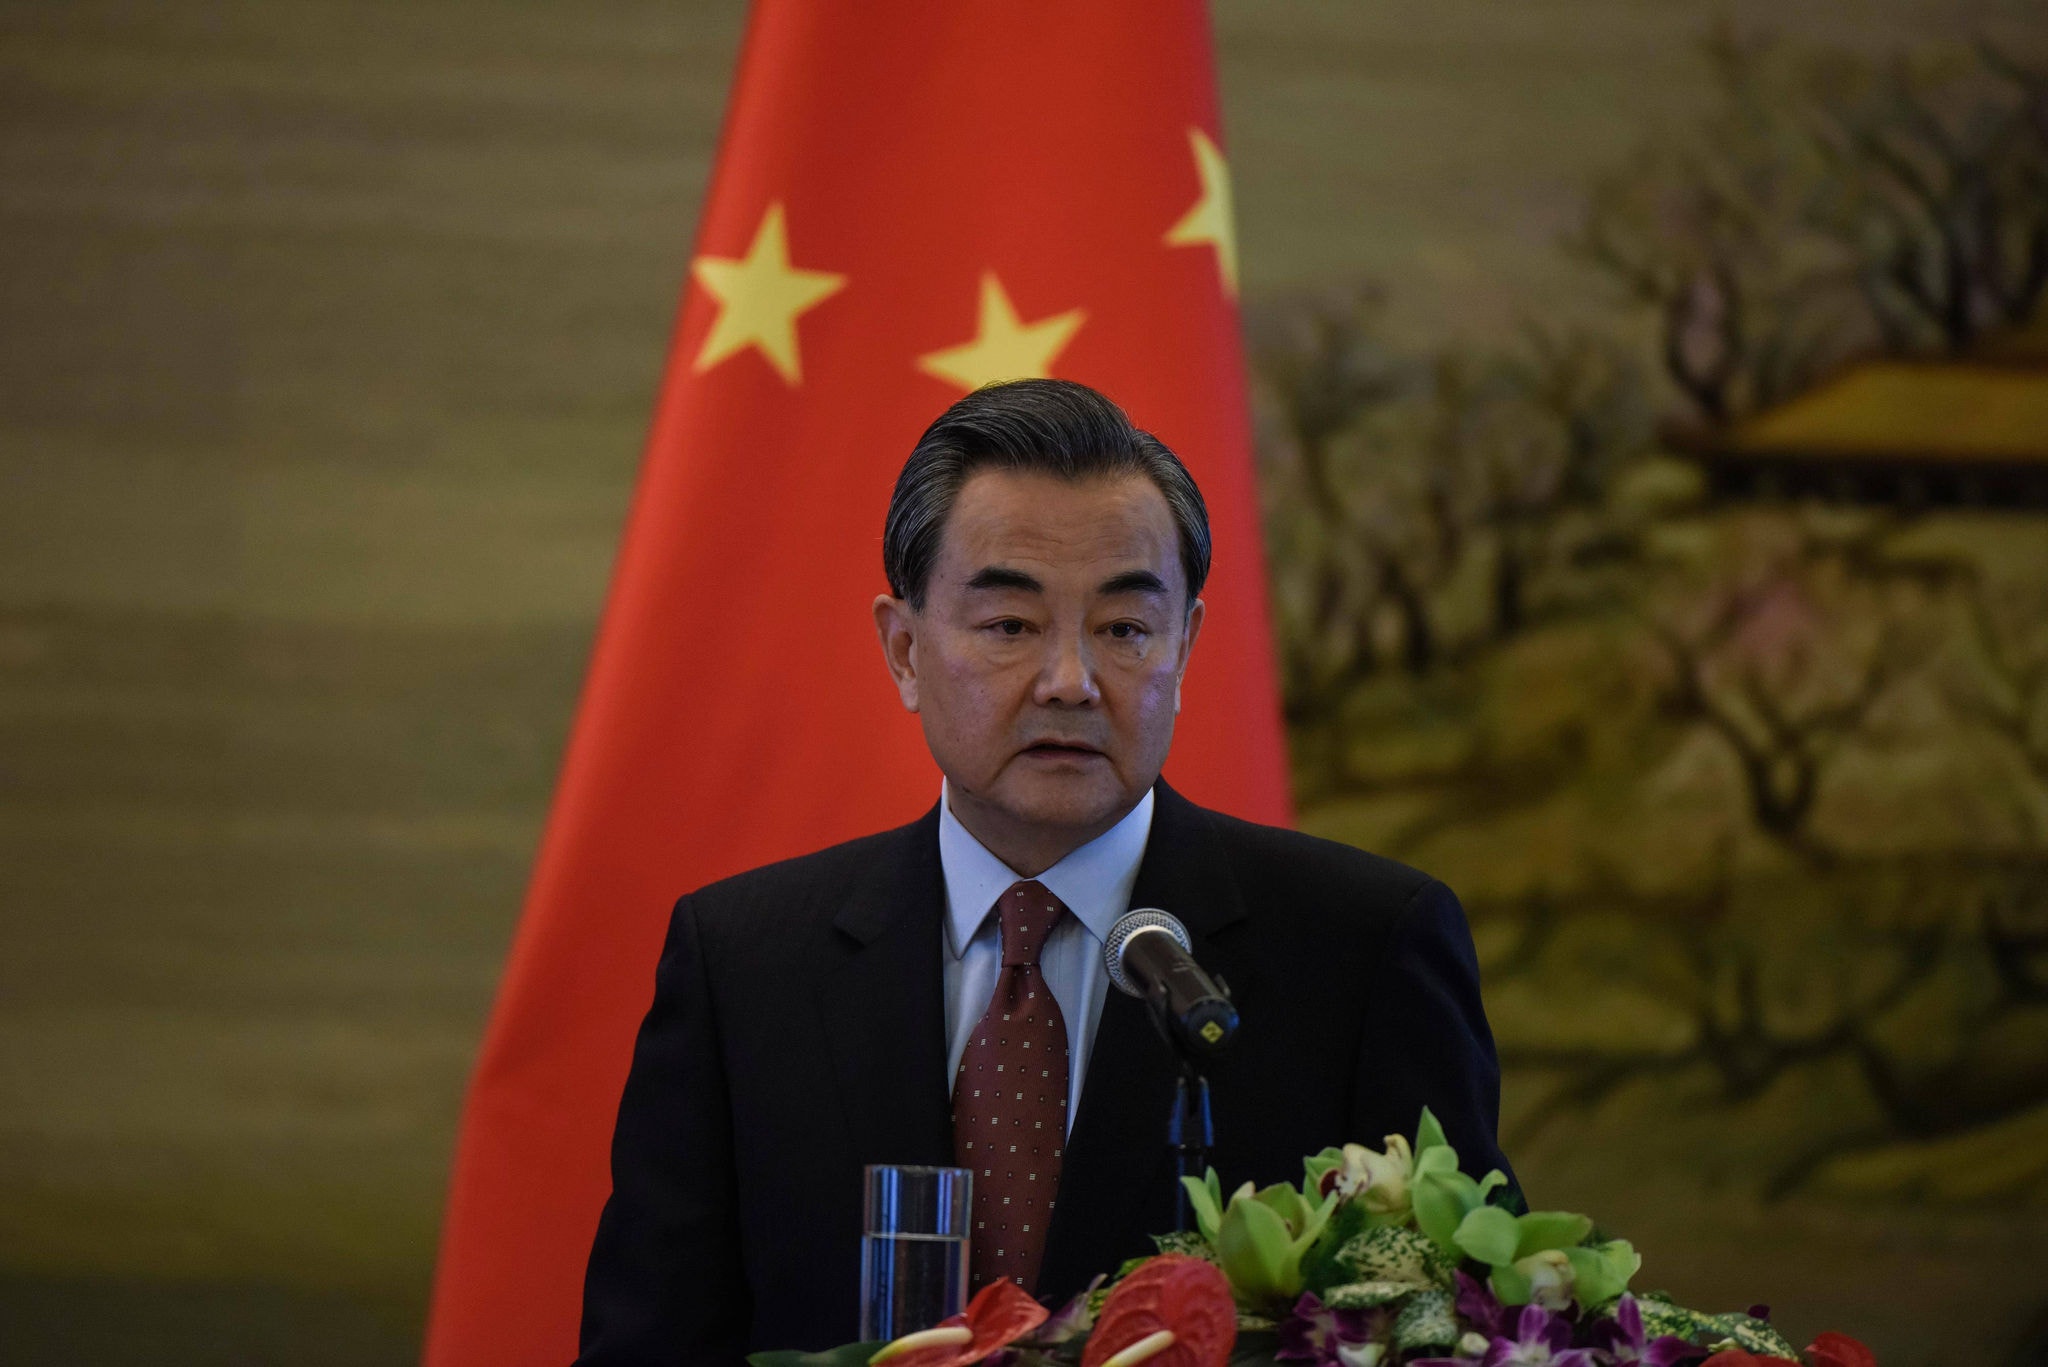  O ministro chinês das Relações Exteriores, Wang Yi (foto), não desmentiu explicitamente a presença de mísseis na ilha